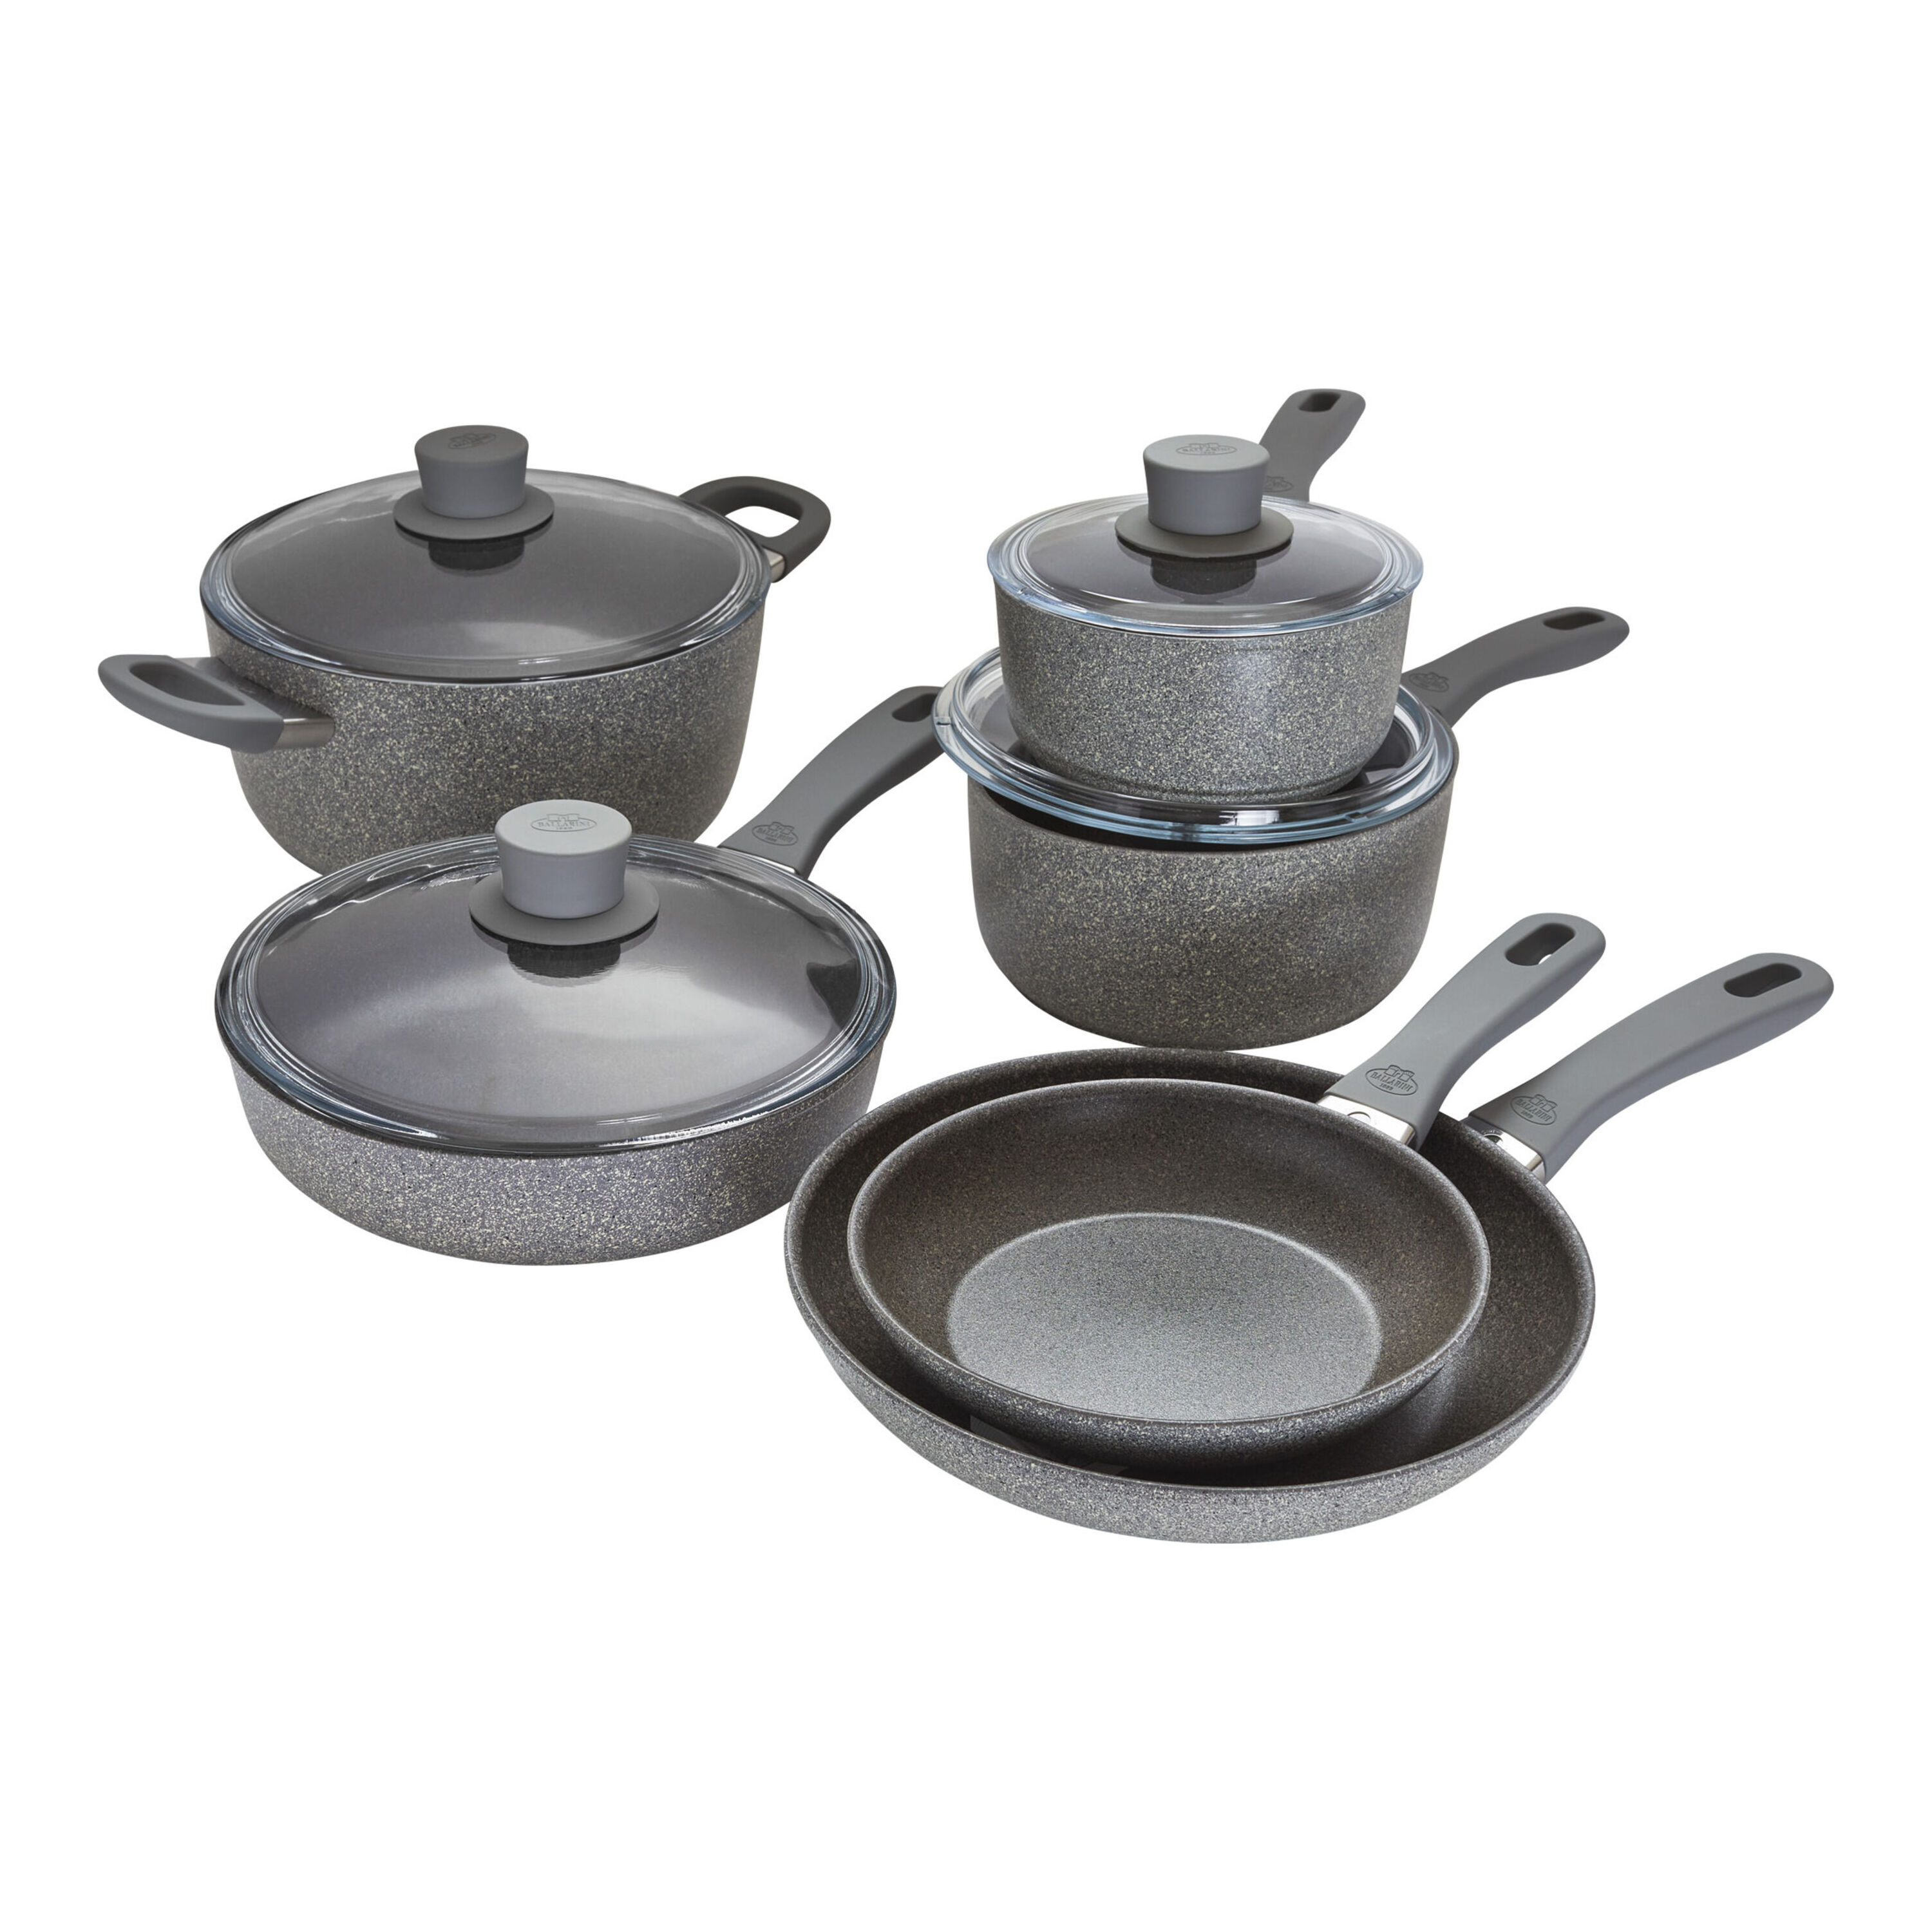 Granitestone Cookware Set, Aluminum, Non-Stick, 10-Piece, Search